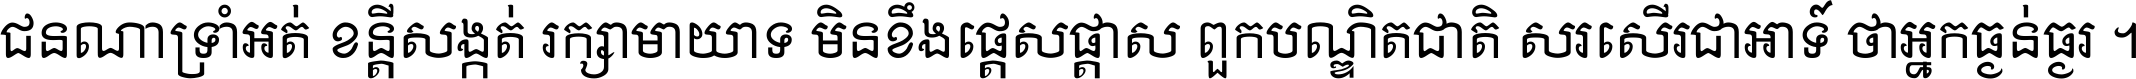 Khmer Chhay Text 6